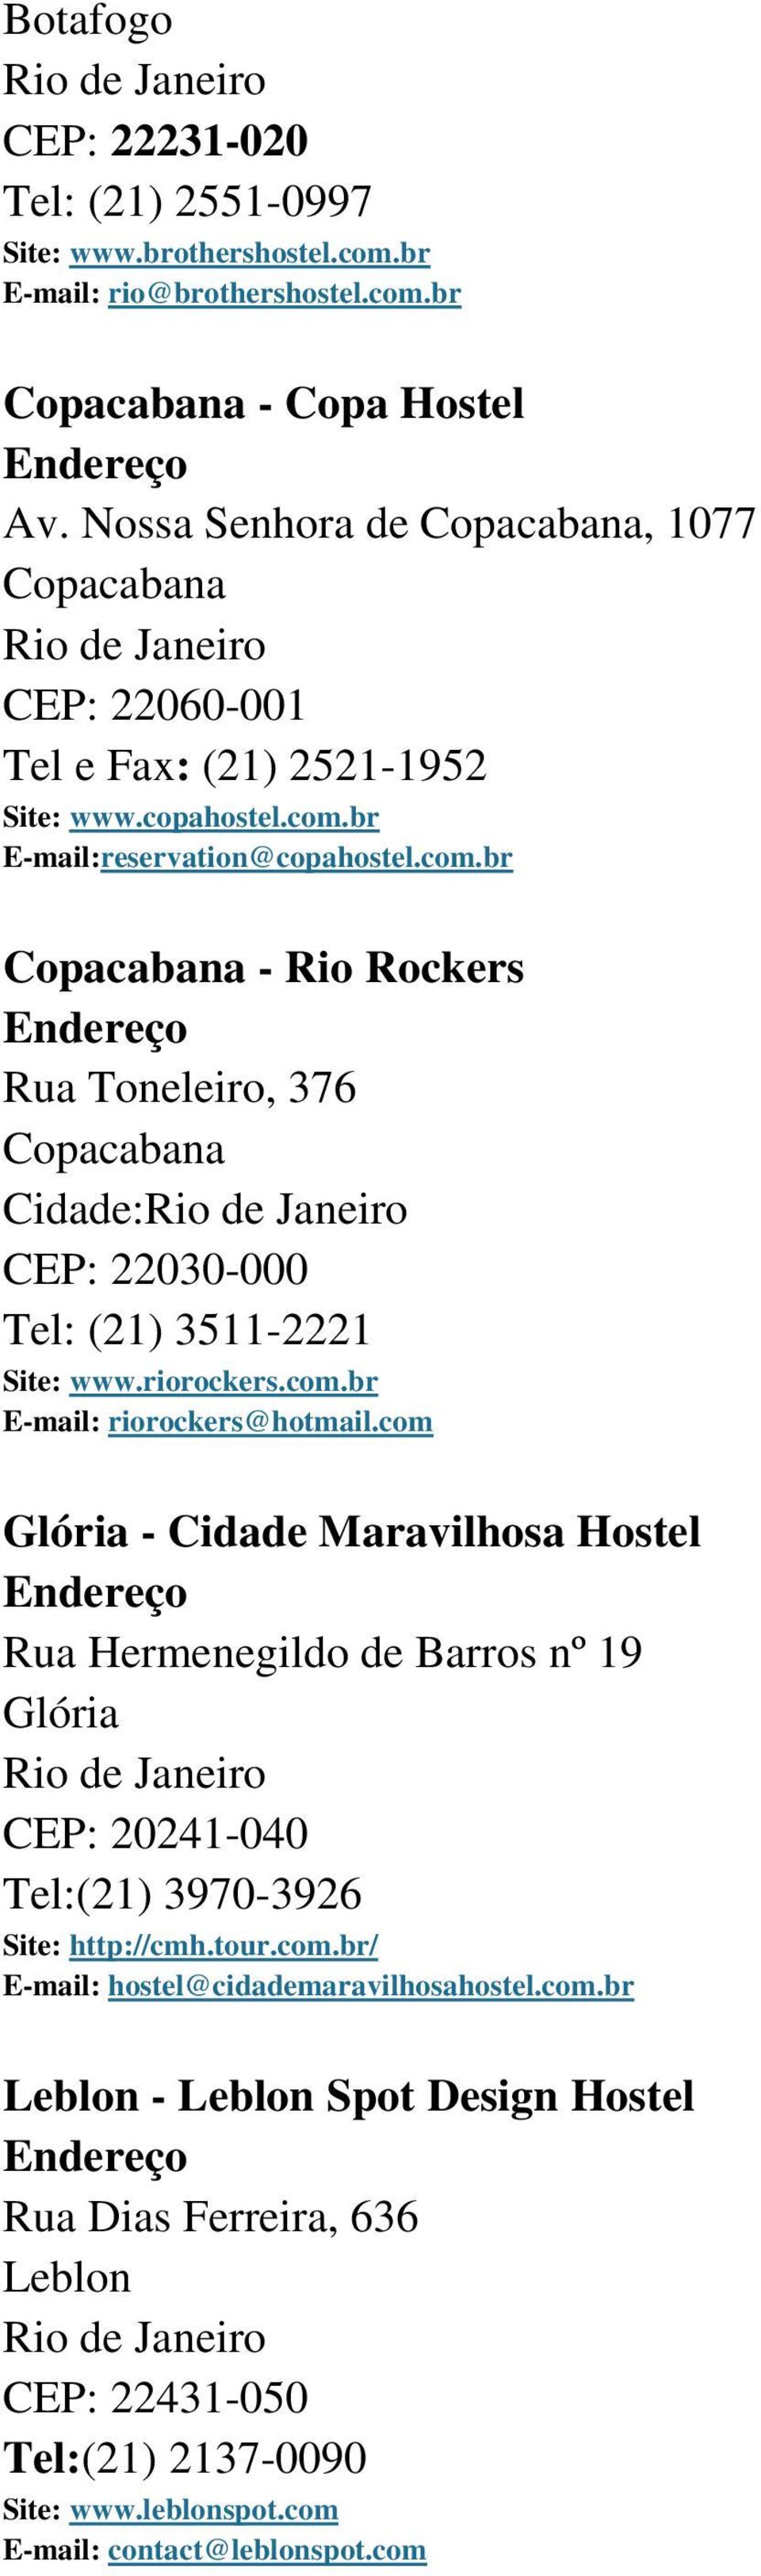 br E-mail:reservation@copahostel.com.br Copacabana - Rio Rockers Rua Toneleiro, 376 Copacabana Cidade: CEP: 22030-000 Tel: (21) 3511-2221 Site: www.riorockers.com.br E-mail: riorockers@hotmail.